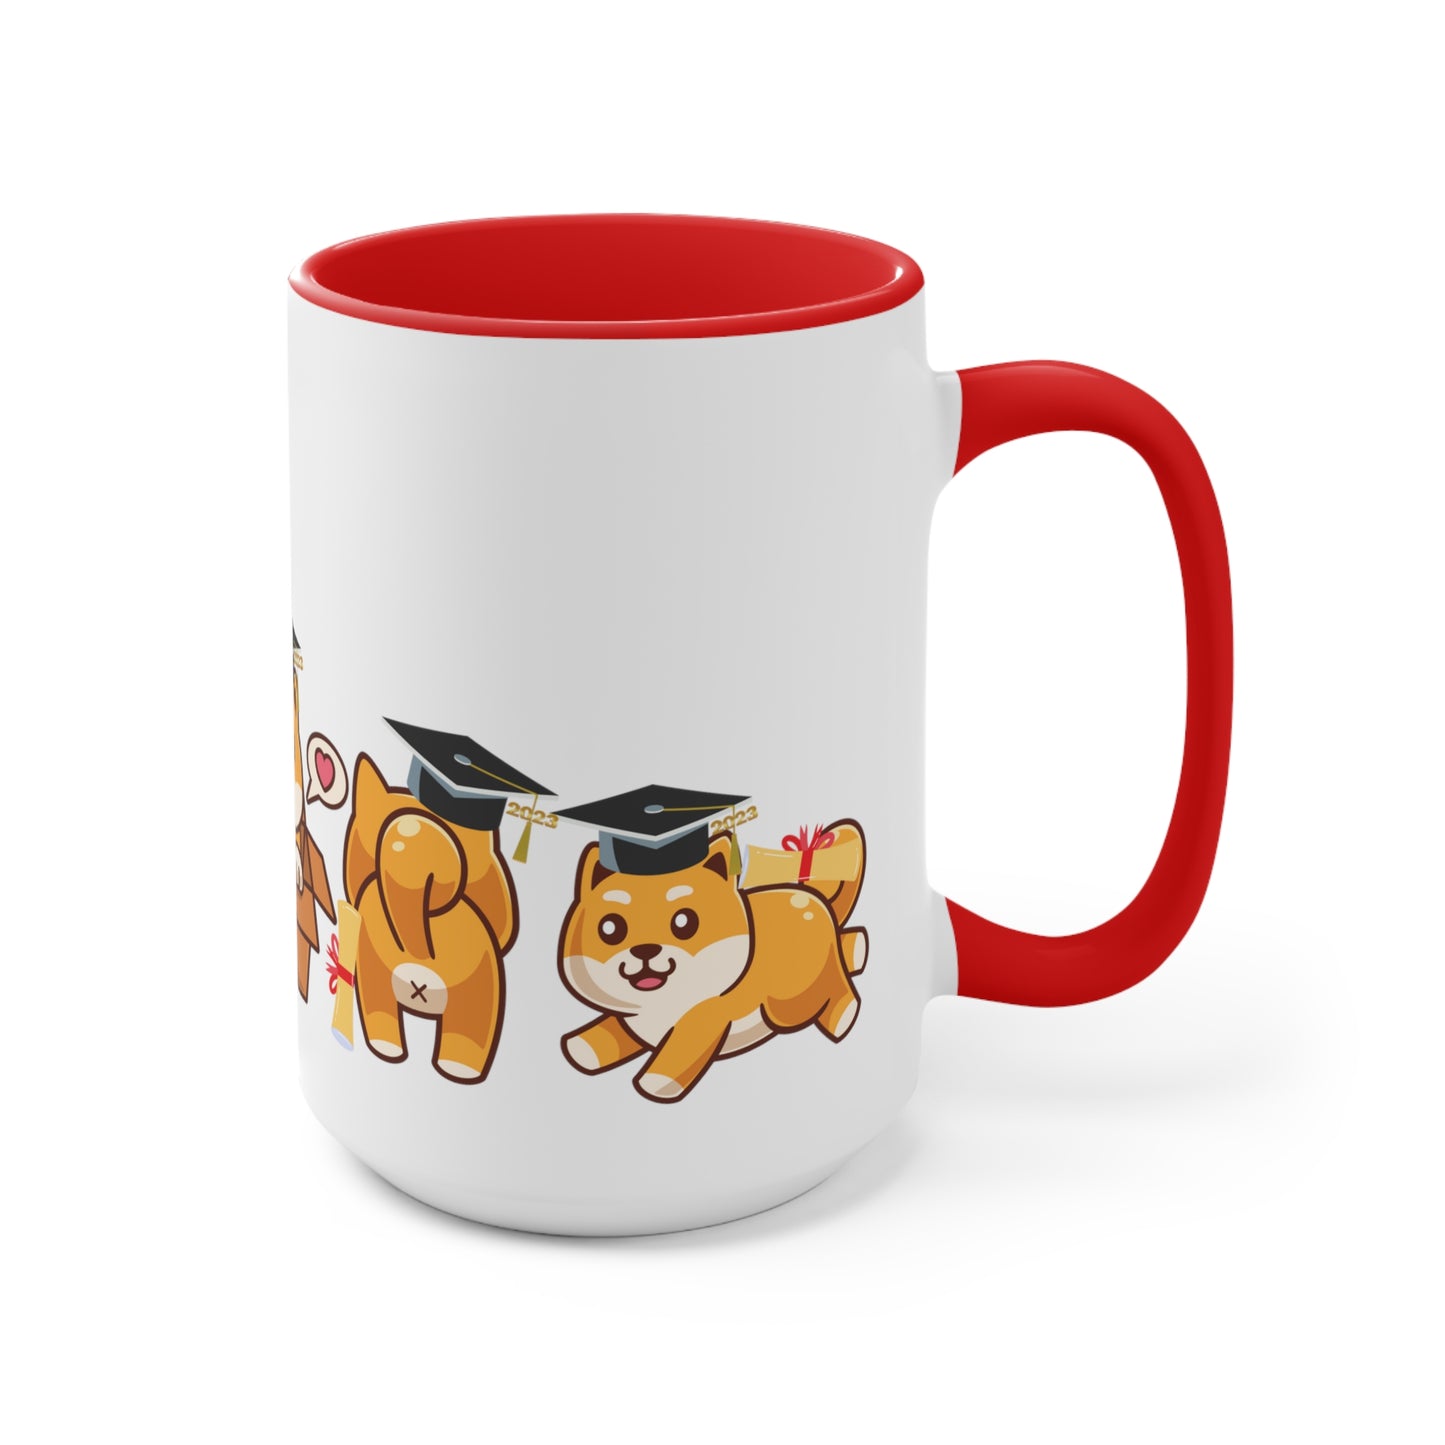 Graduation Accent Mugs, Cute Dog Mug, Cute Puppies, Cute Pup, Cute Animal Mug, Cute Coffee Mug